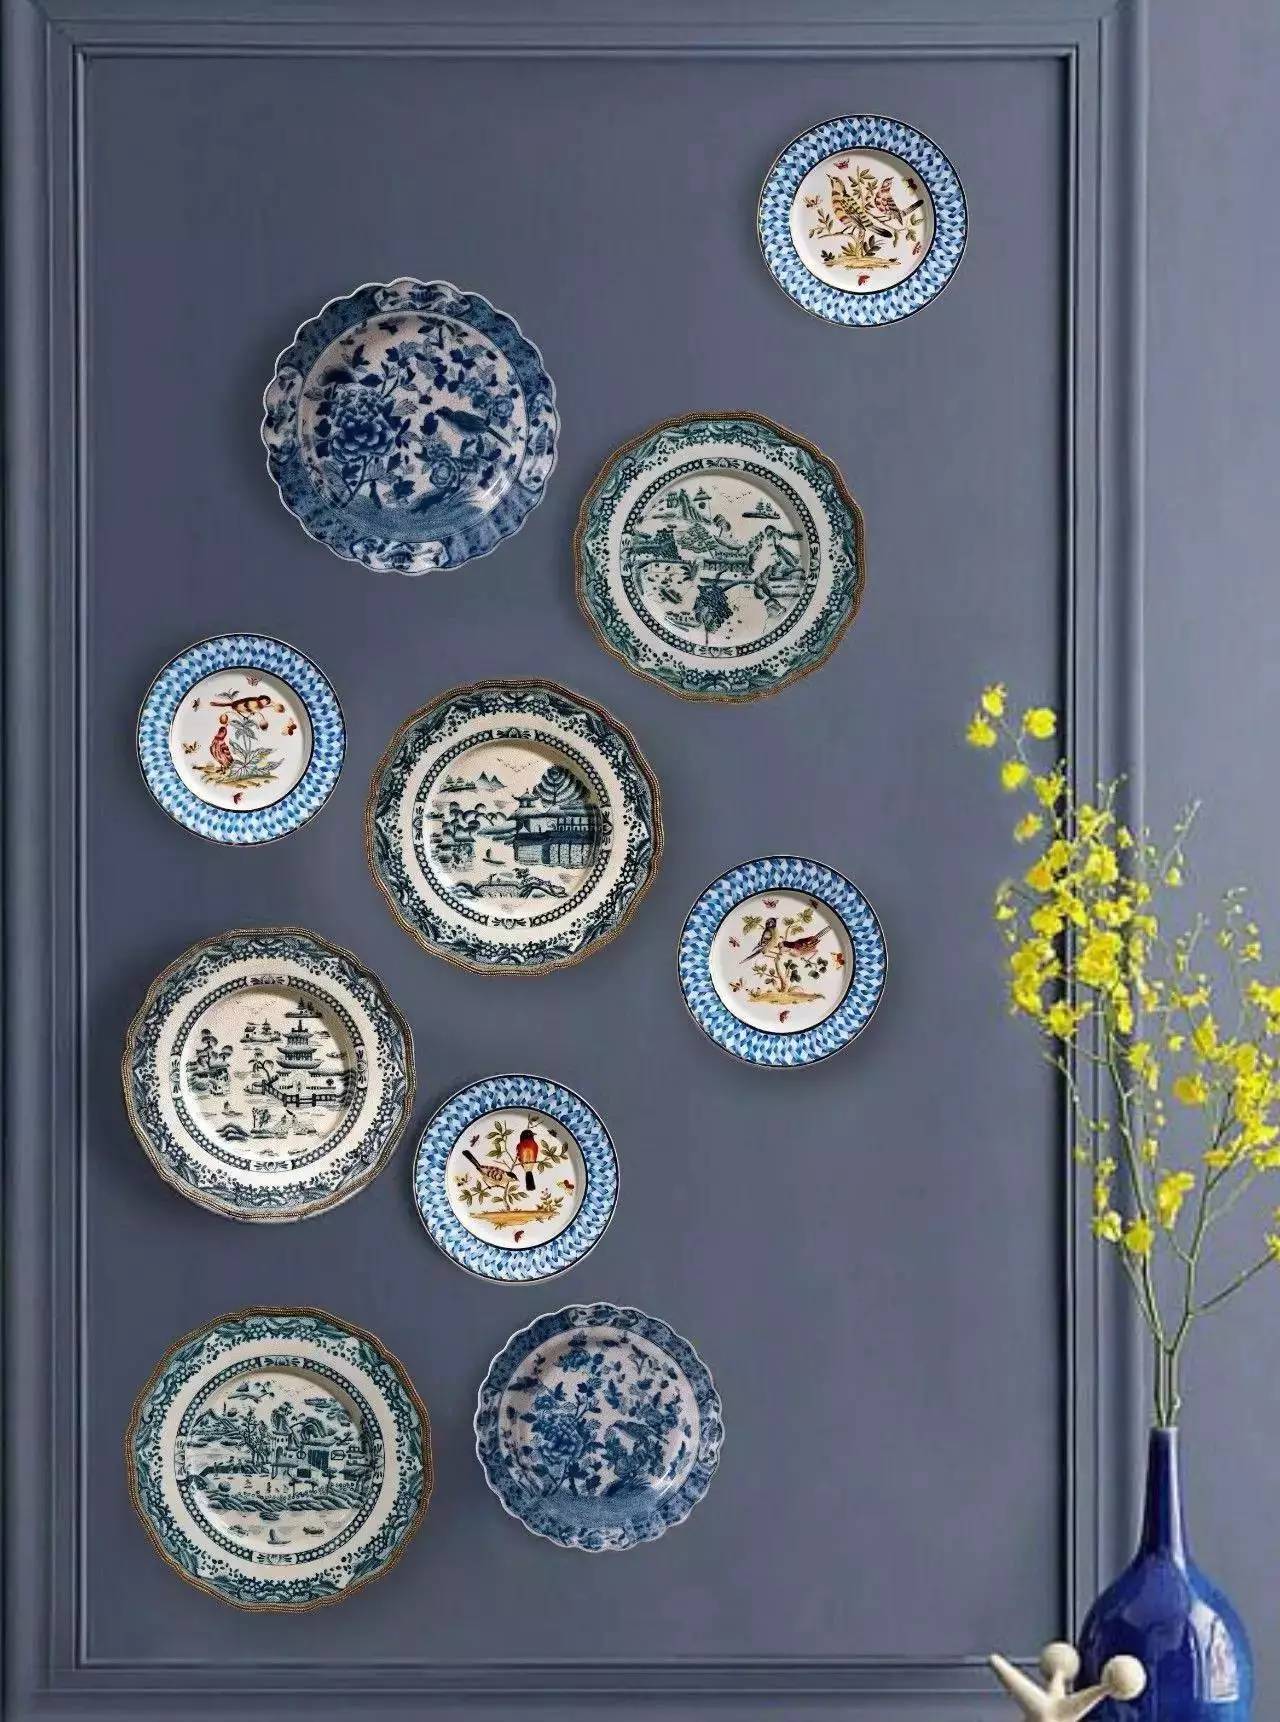 精致的挂盘装饰而成的墙面画富有层次感,添加不同的花色呈现出不同的